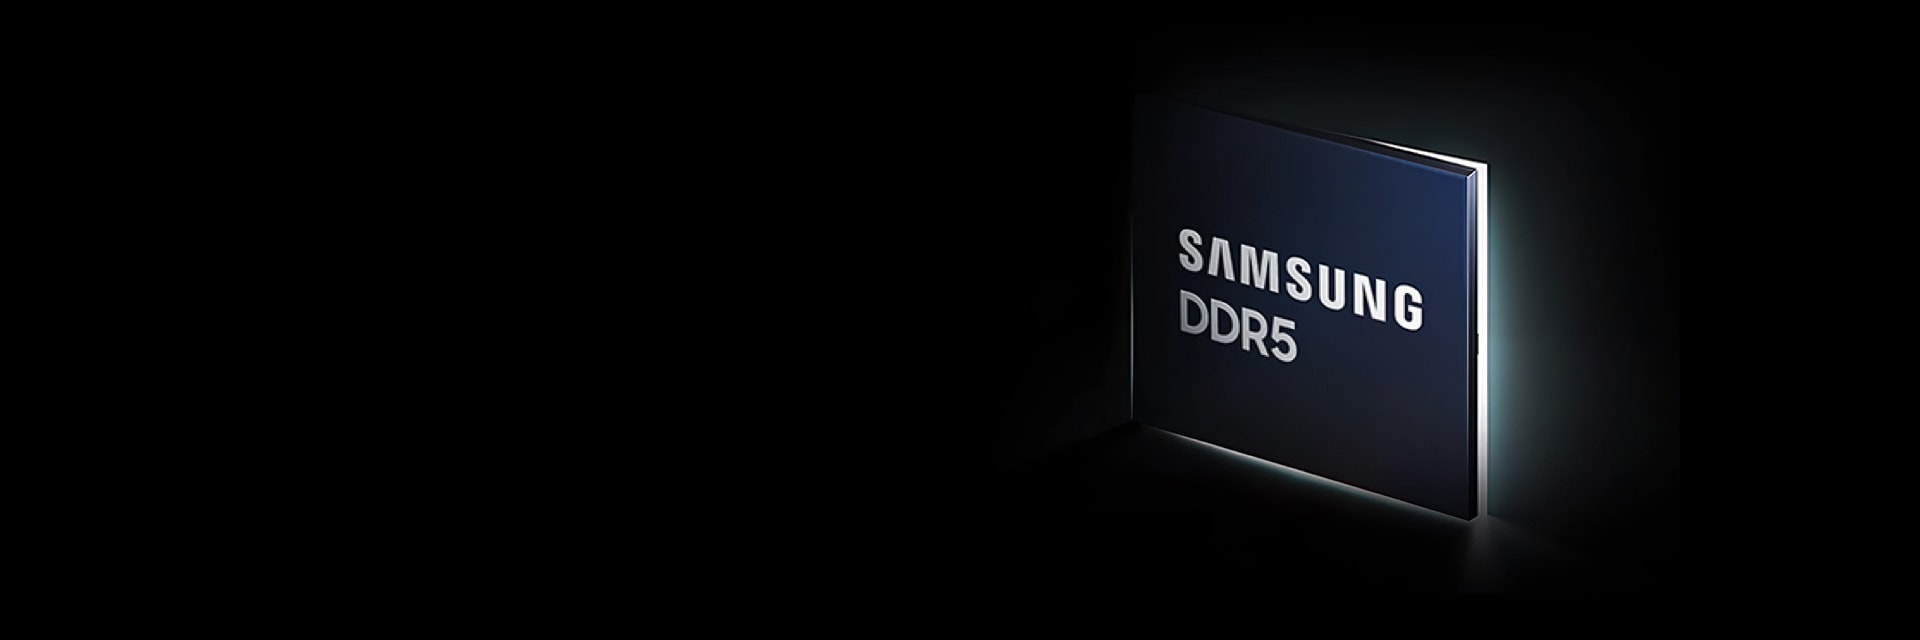 Samsung Semiconductor DRAM DDR5.